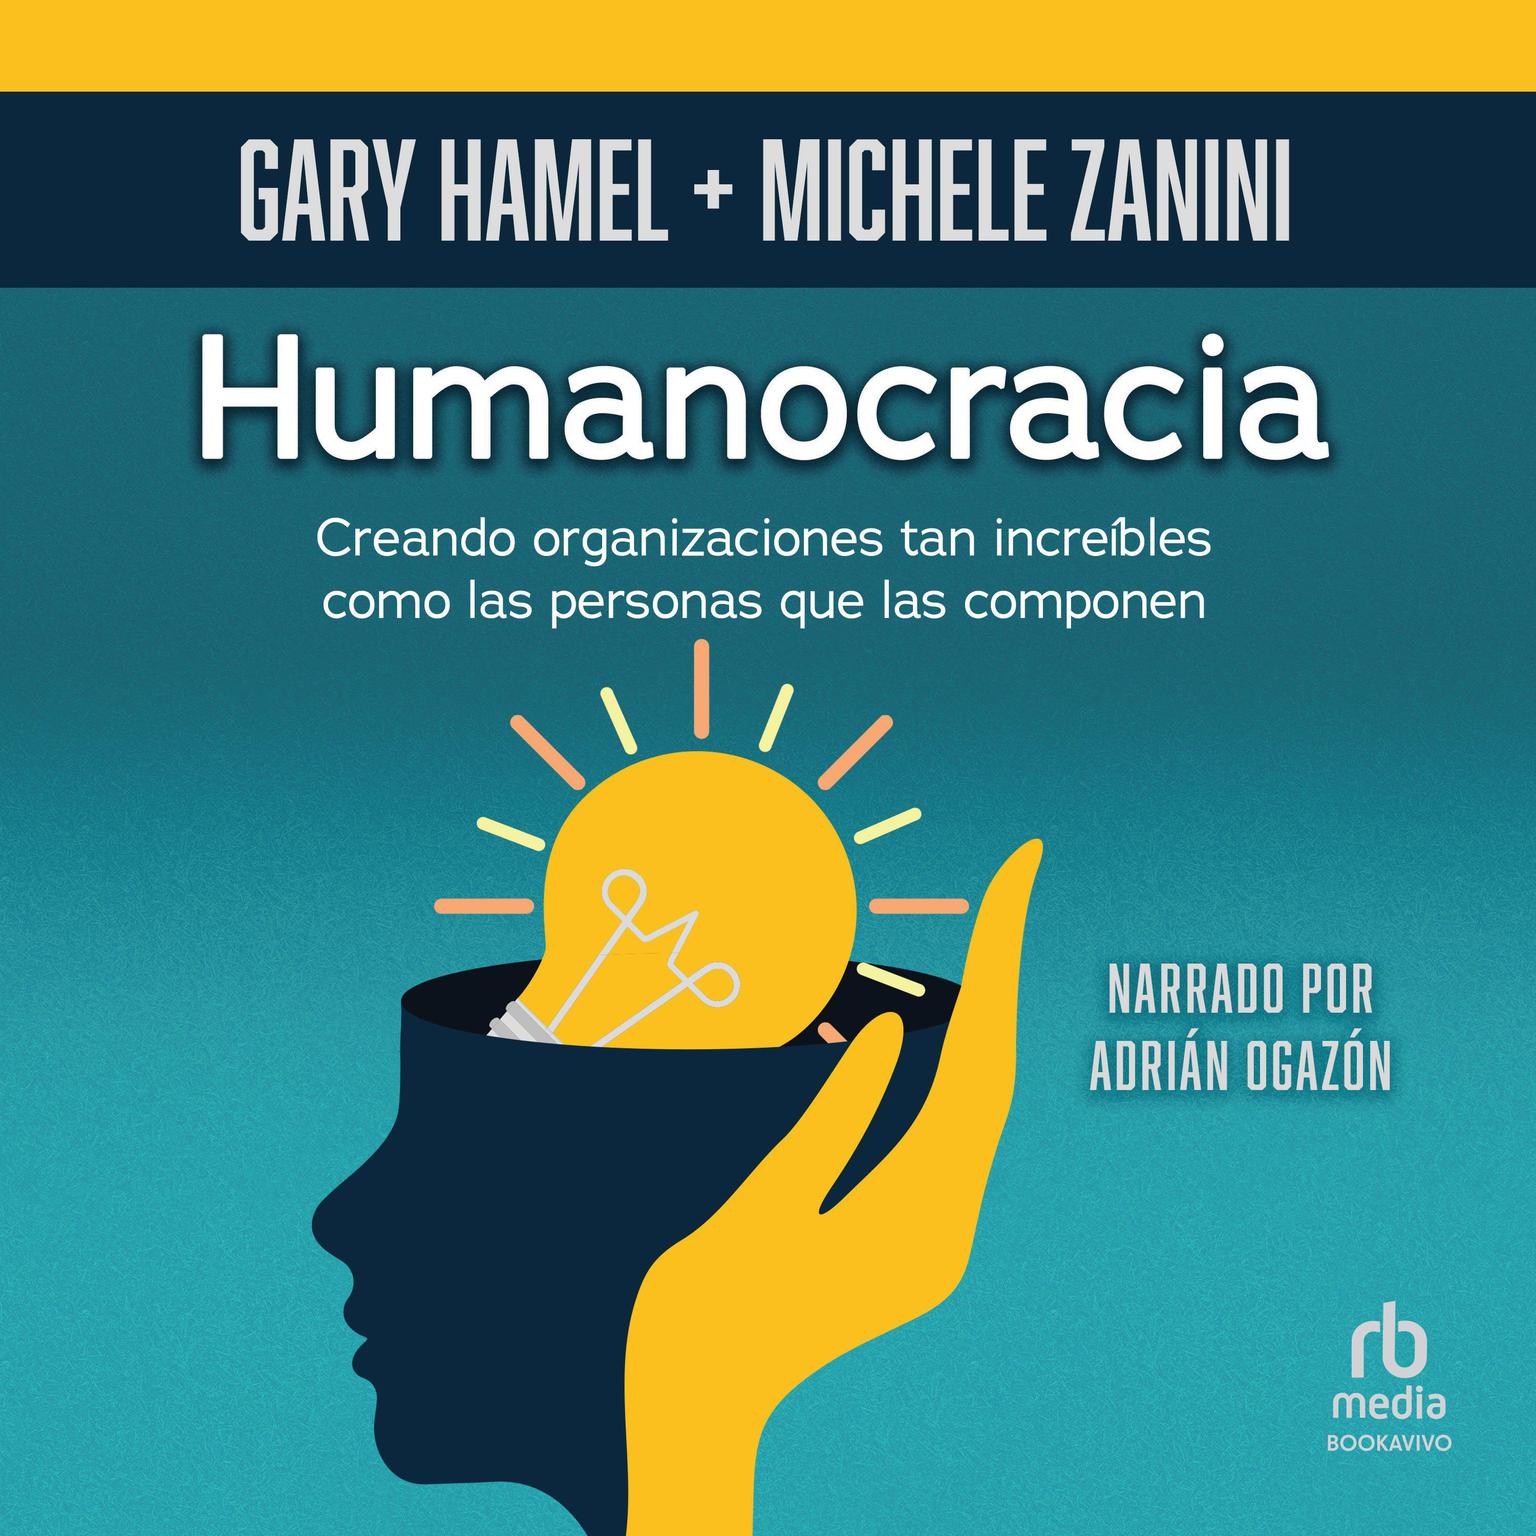 Humanocracia: Creando organizaciones tan increíbles como las personas que las integran (Creating Organizations as Amazing as the People Inside Them) Audiobook, by Gary Hamel